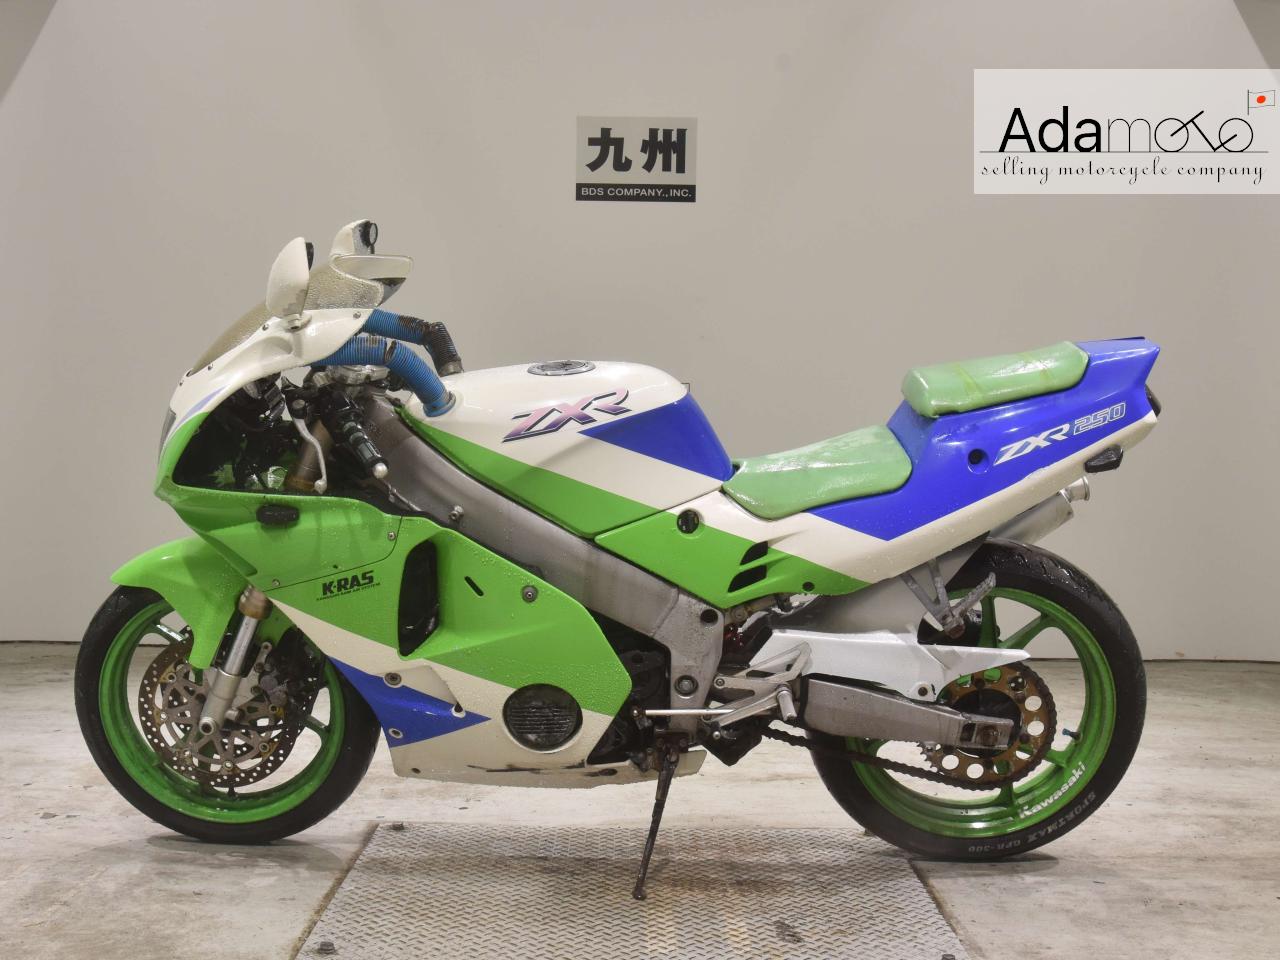 Kawasaki ZXR250 2 - Adamoto - Motorcycles from Japan